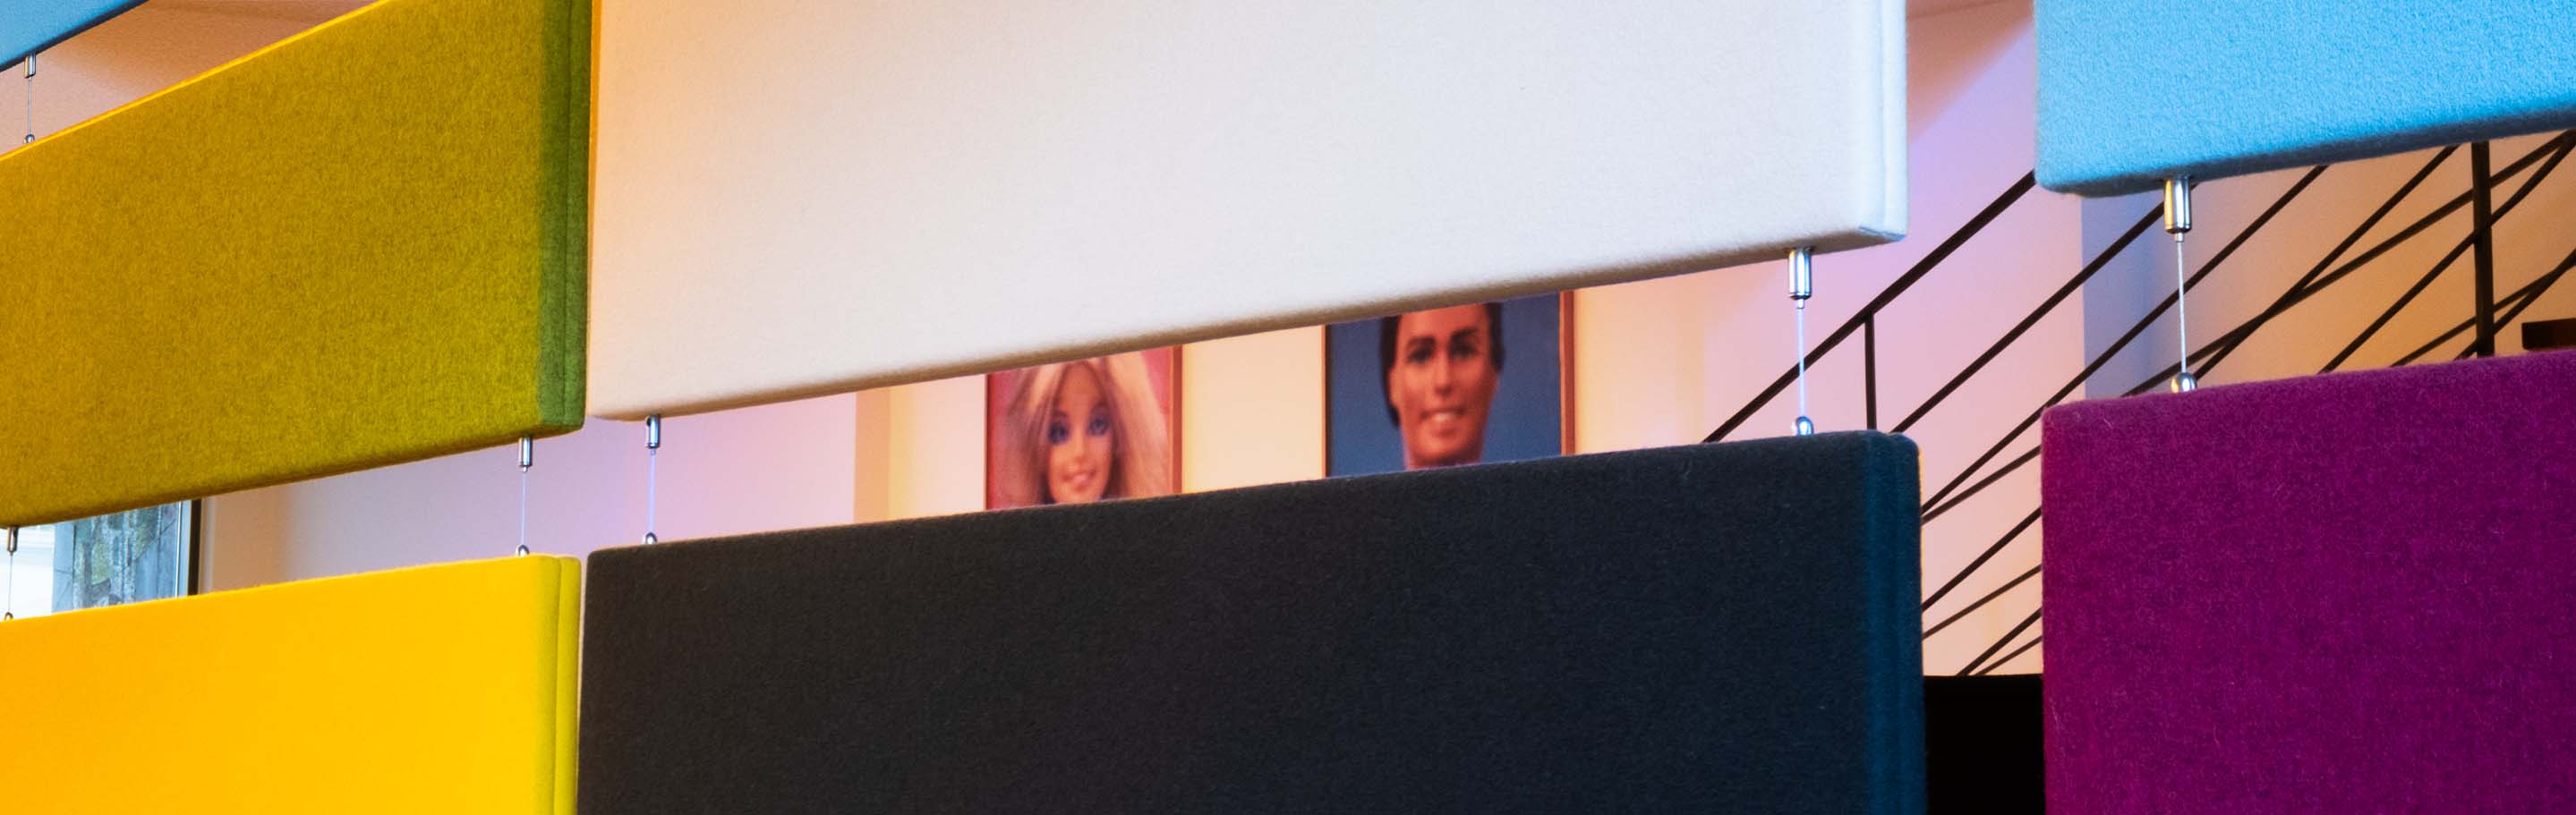 Blick durch farbige hängende Textilpaneele, im Hintergrund sind Ausschnitte von Postern mit Barbie und Ken und sehen 